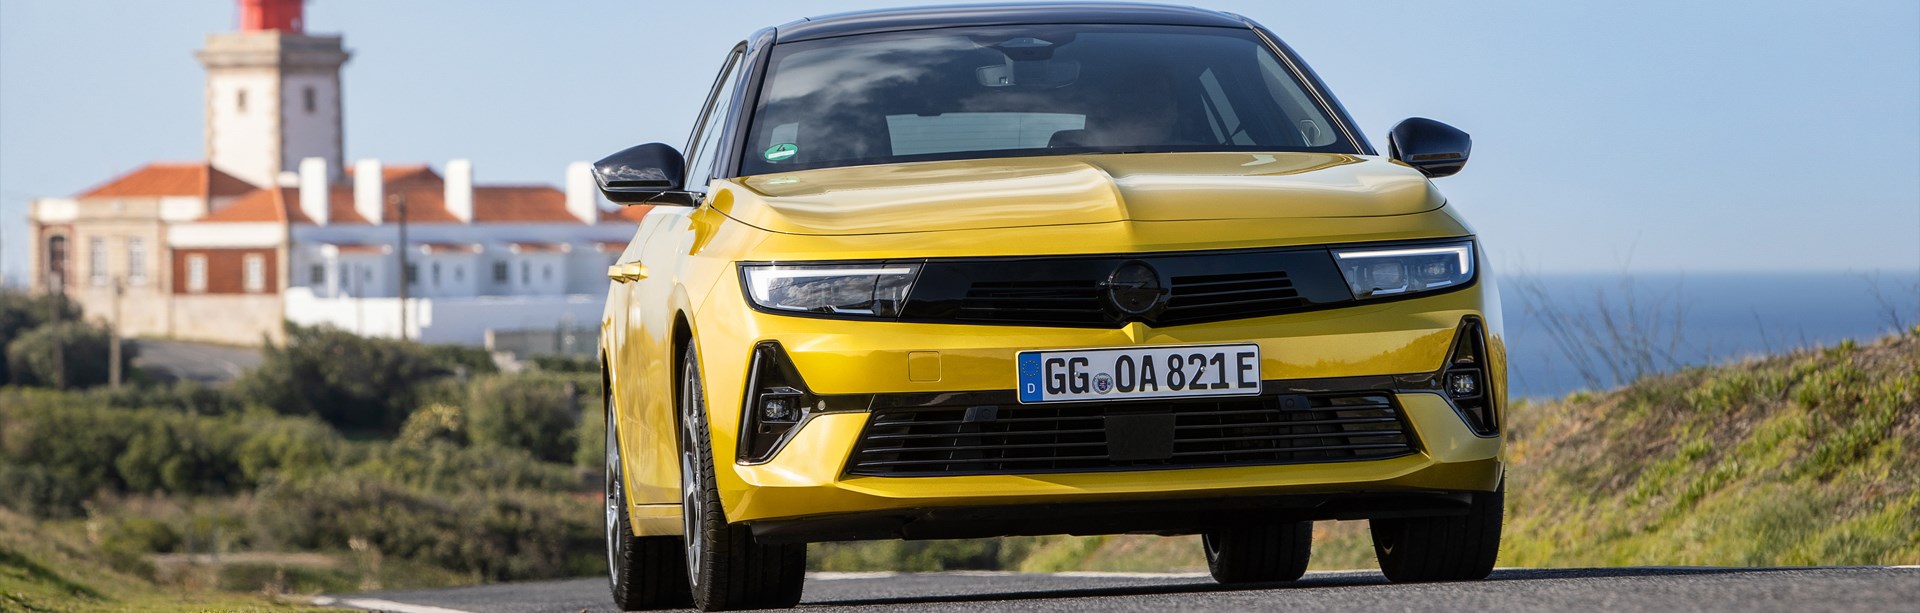 Tidningen Motor provkör Opel Astra Plug-in Hybrid